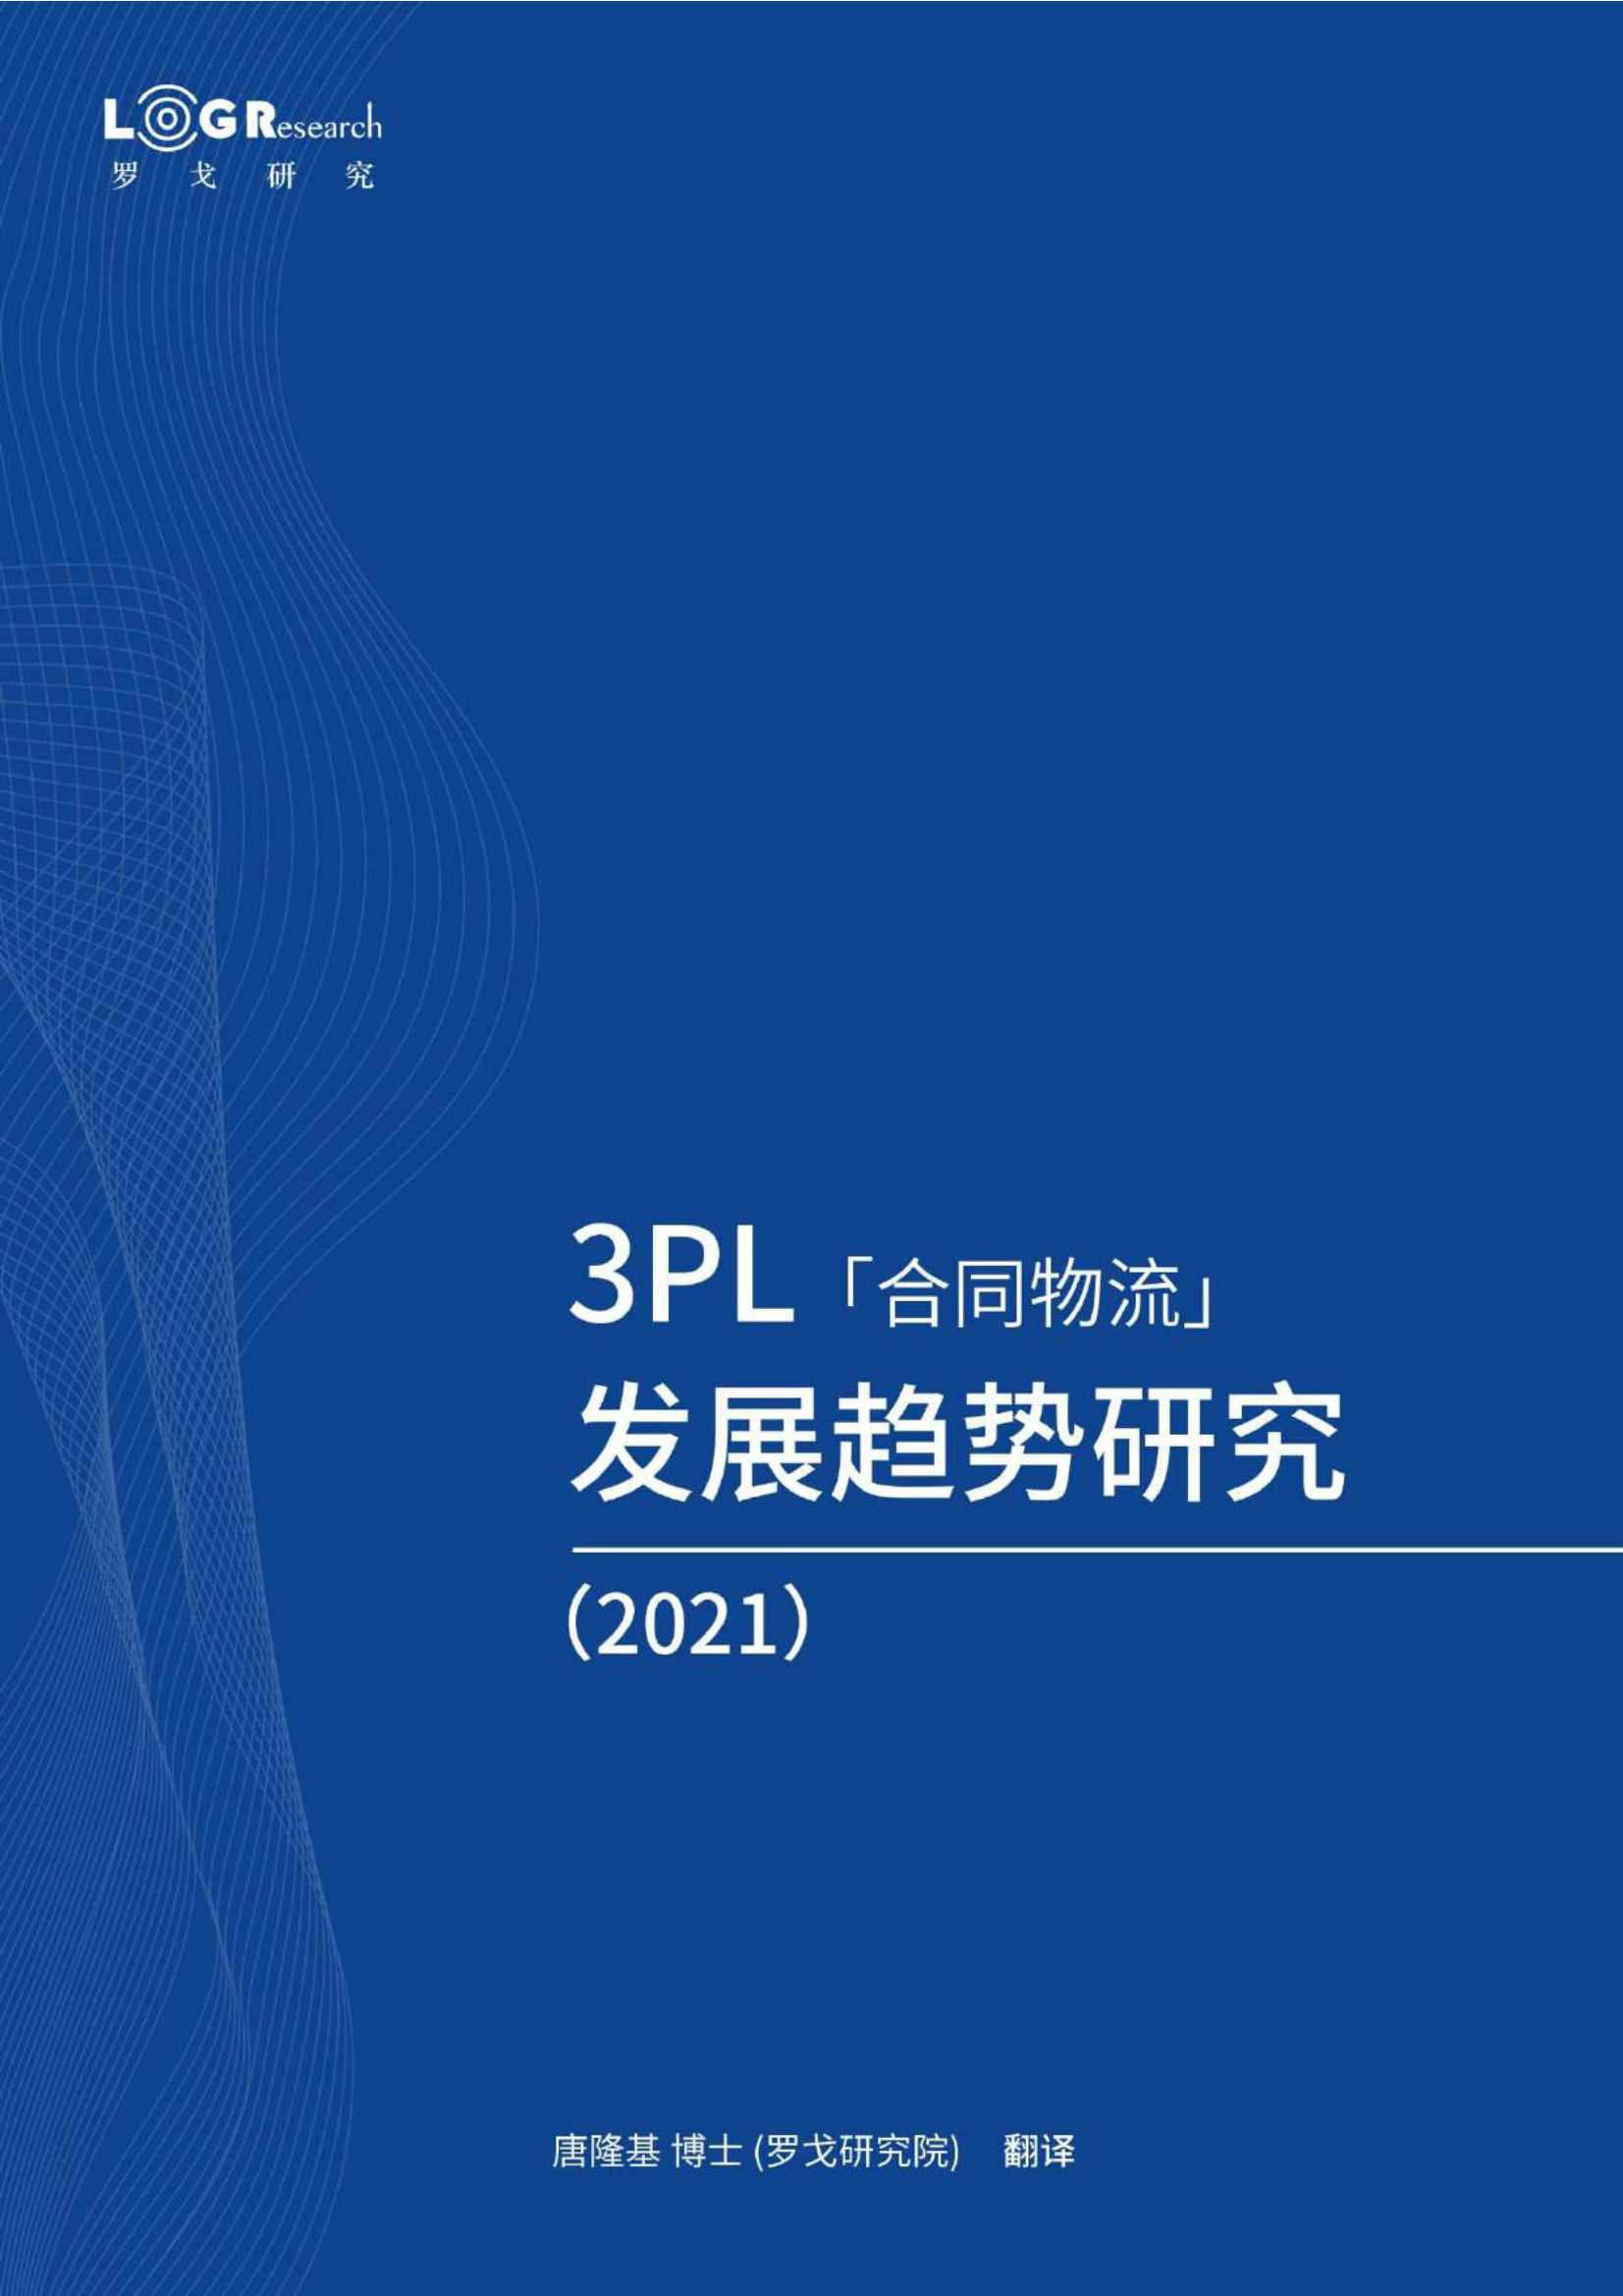 罗戈研究-2021年3PL（合同物流）发展趋势研究-2021.05-51页